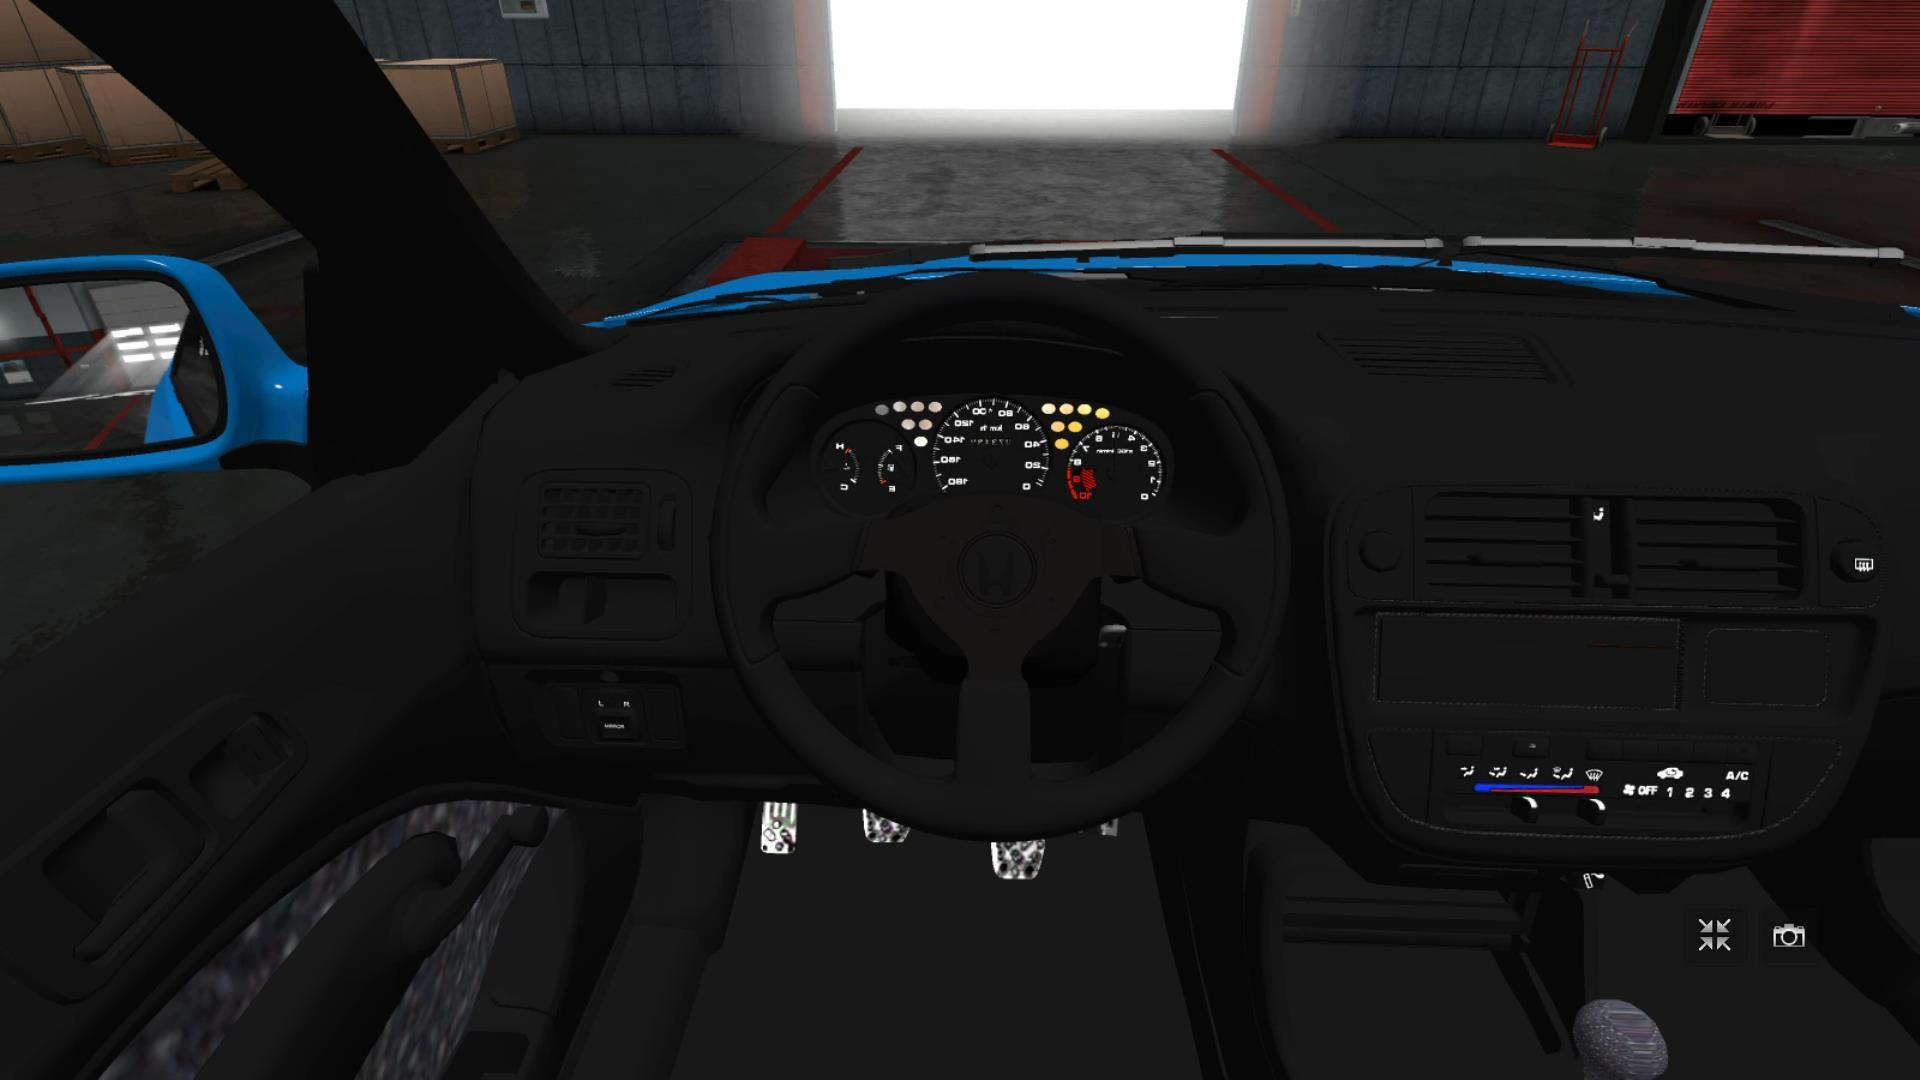 Honda Civic Ek9 Hatchback Car Mod Euro Truck Simulator 2 Mods